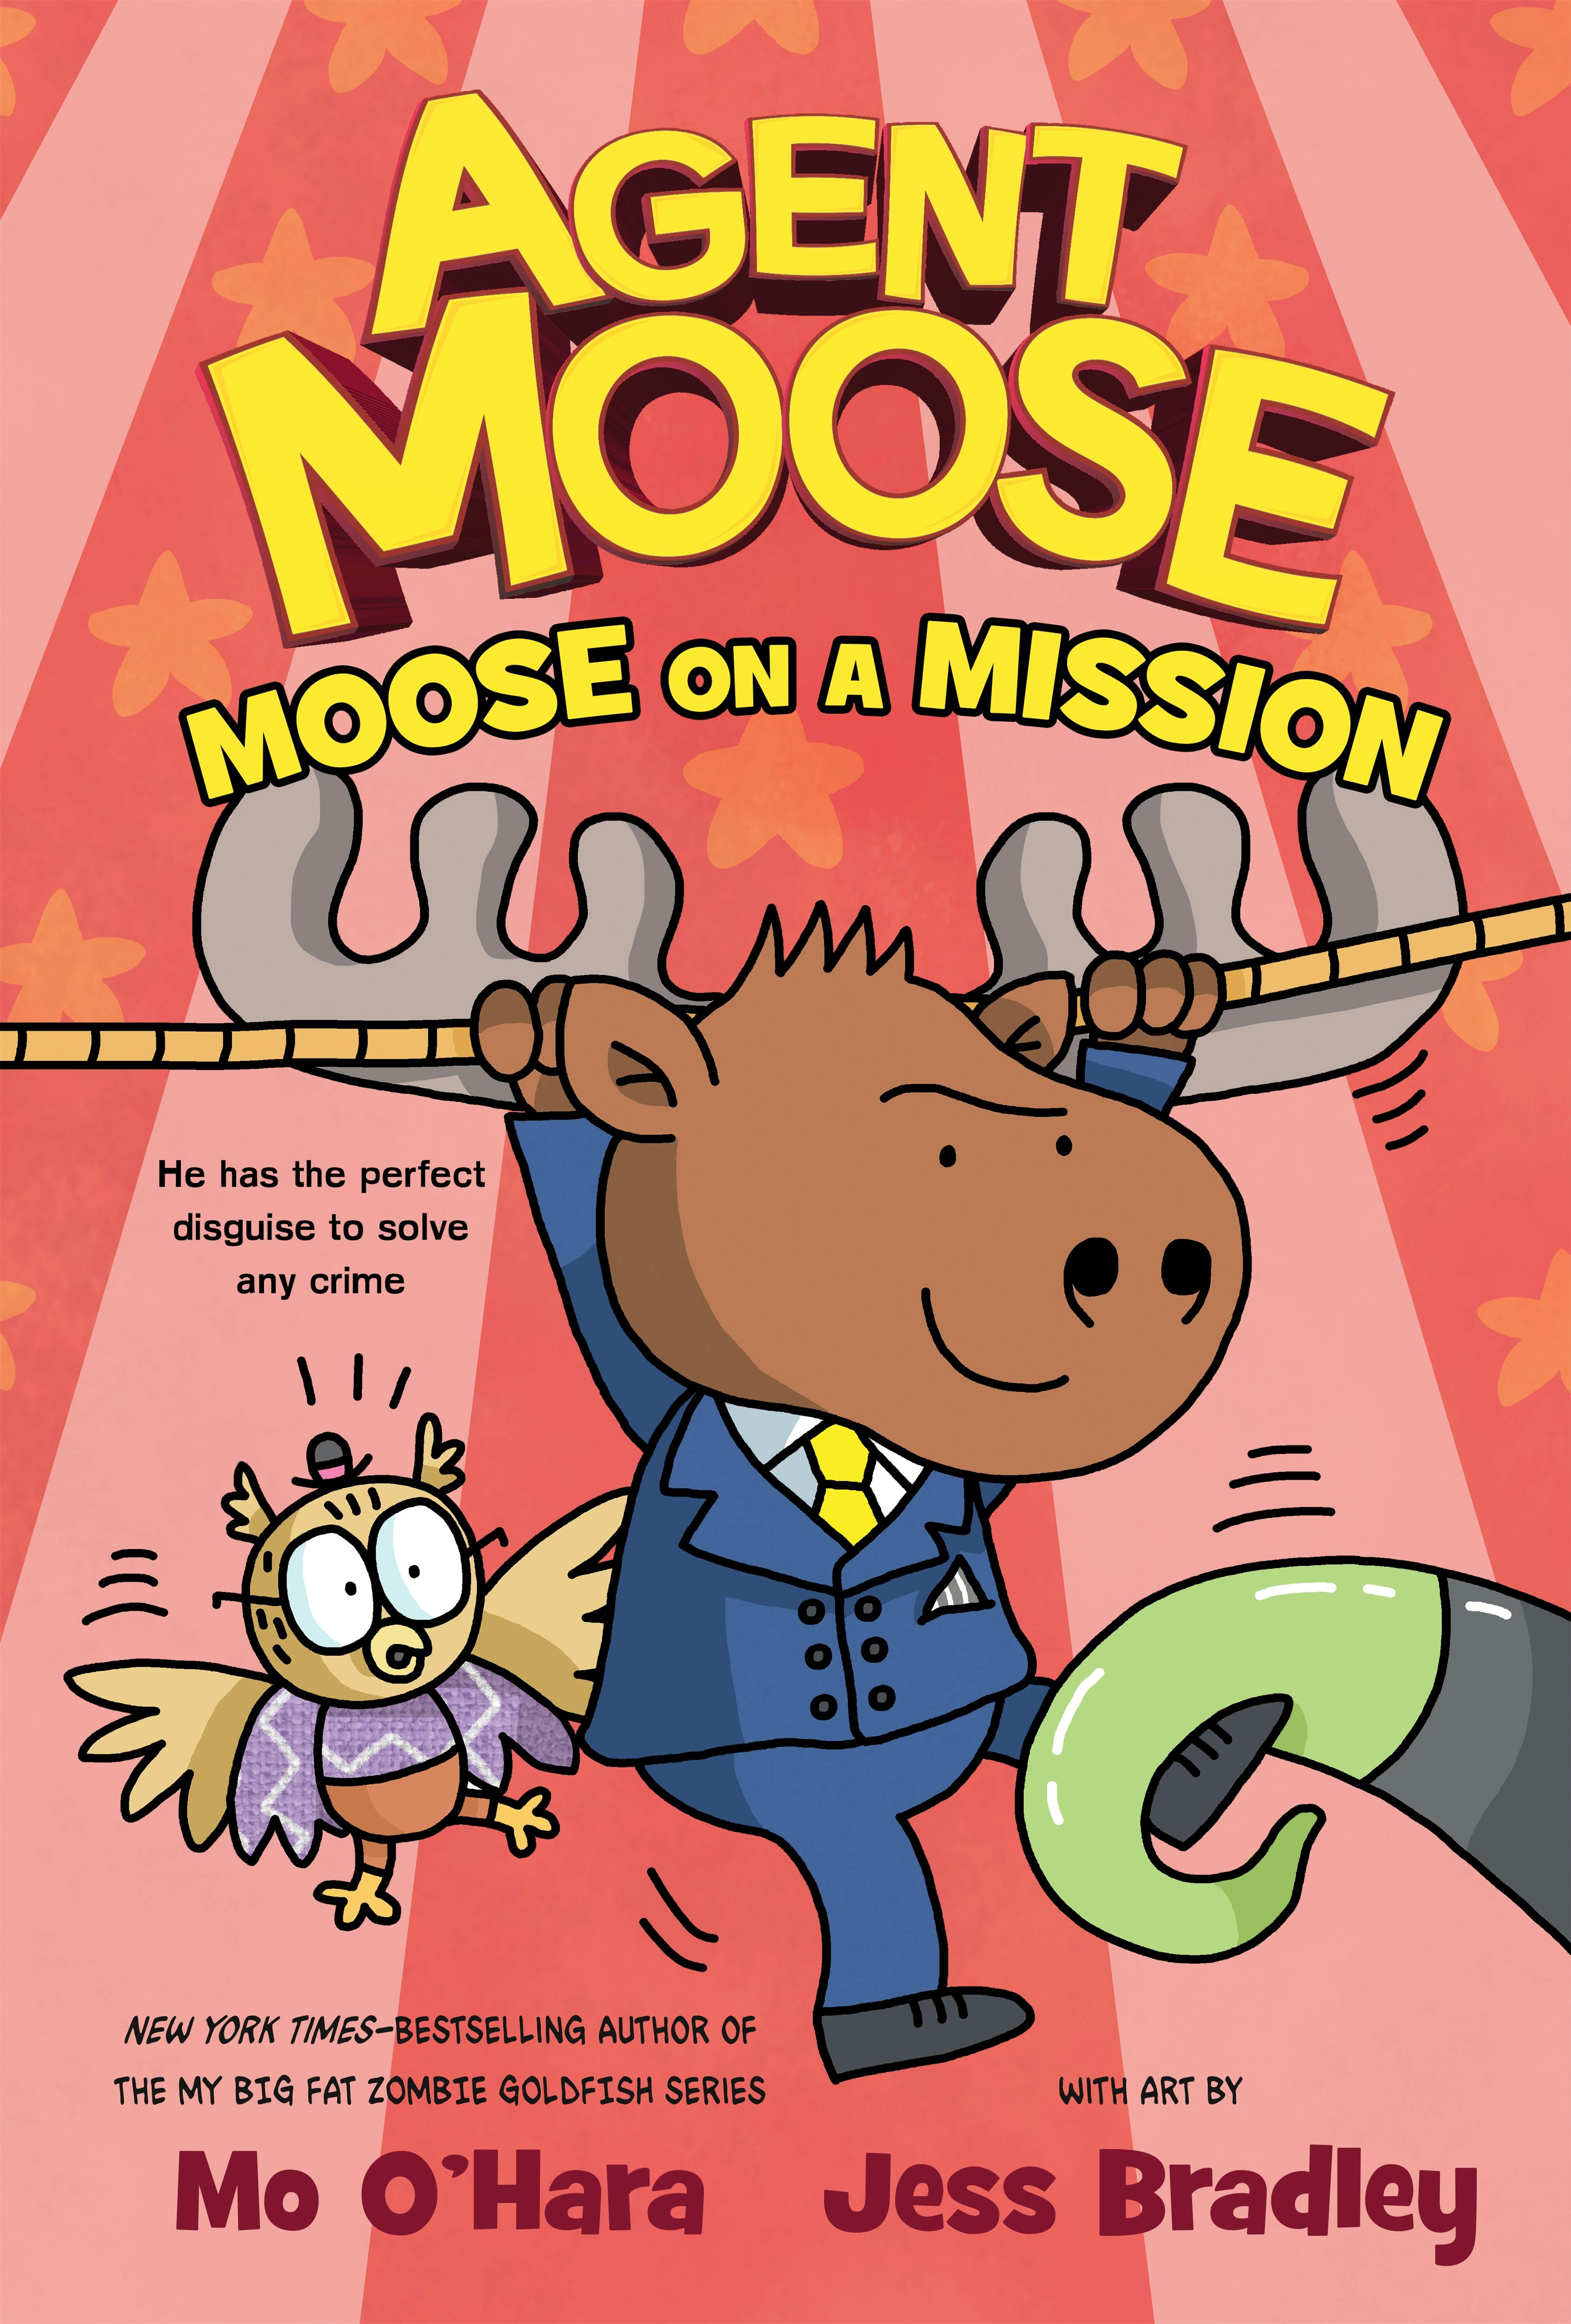 Moose Mission